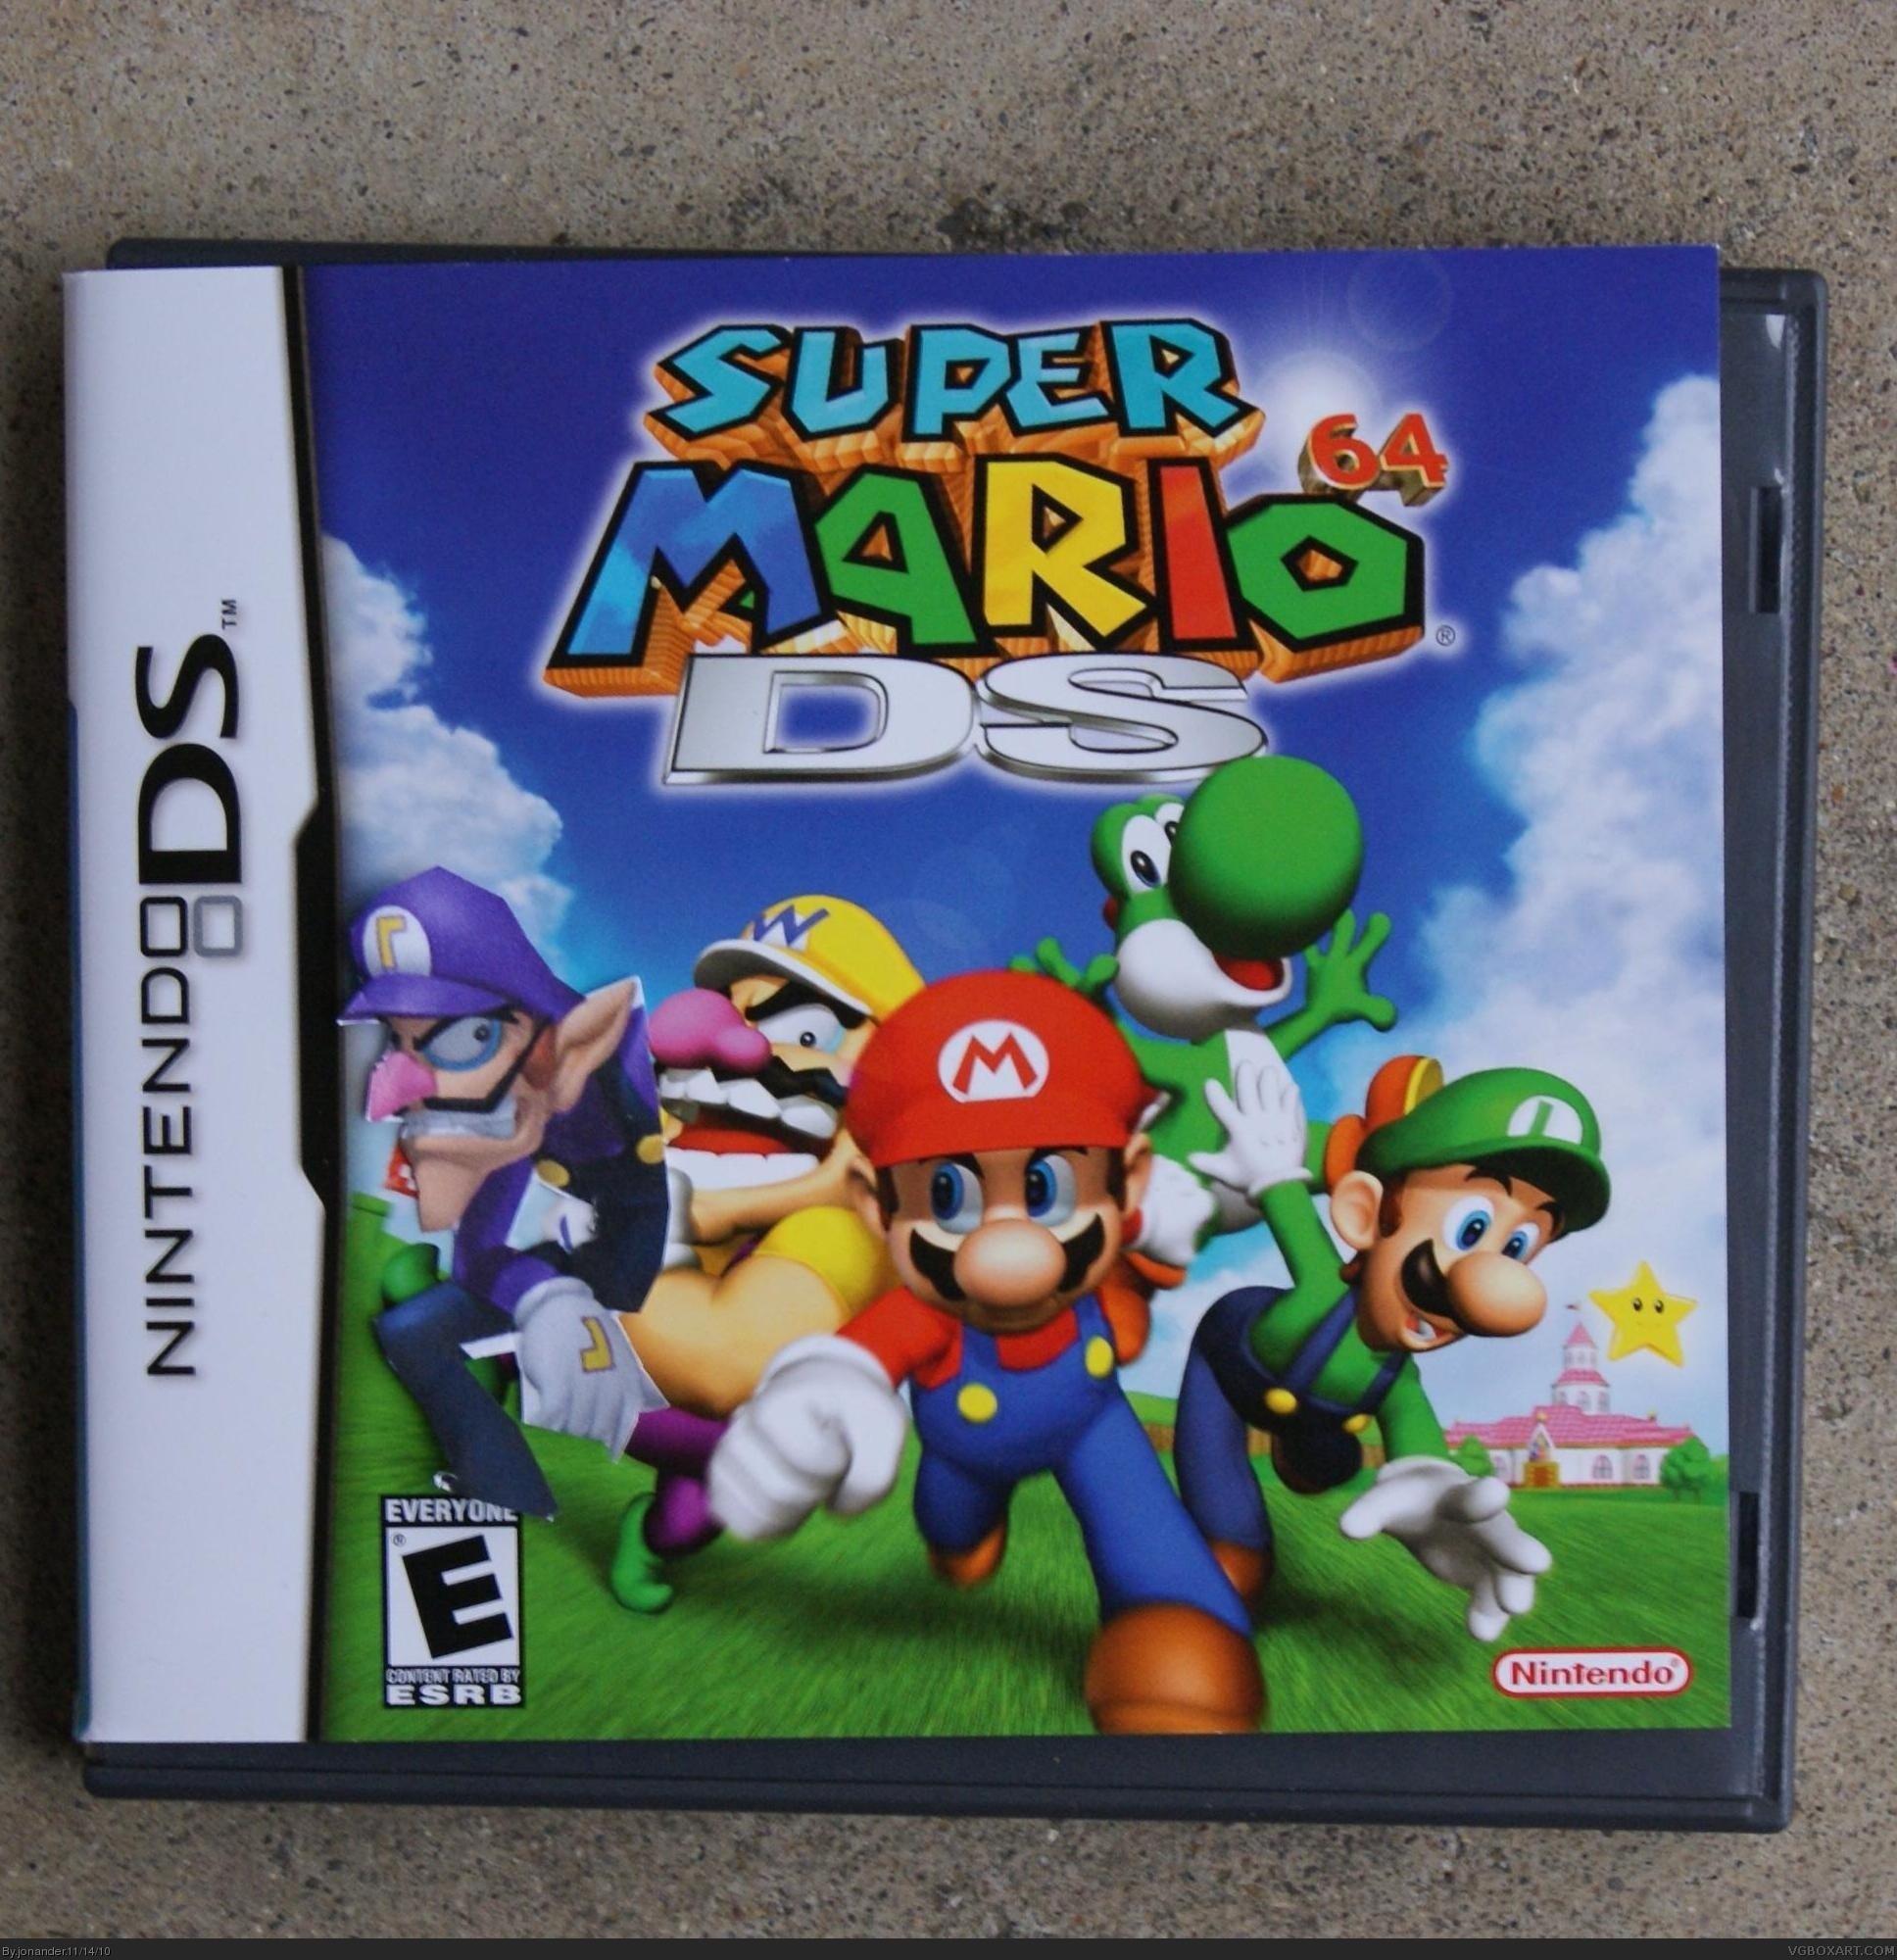 Игры super mario 64. Nintendo 64 Mario 64 диск. Super Mario 64 Nintendo DS. Nintendo DS super Mario 64 DS. Super Mario 64 Nintendo Switch.